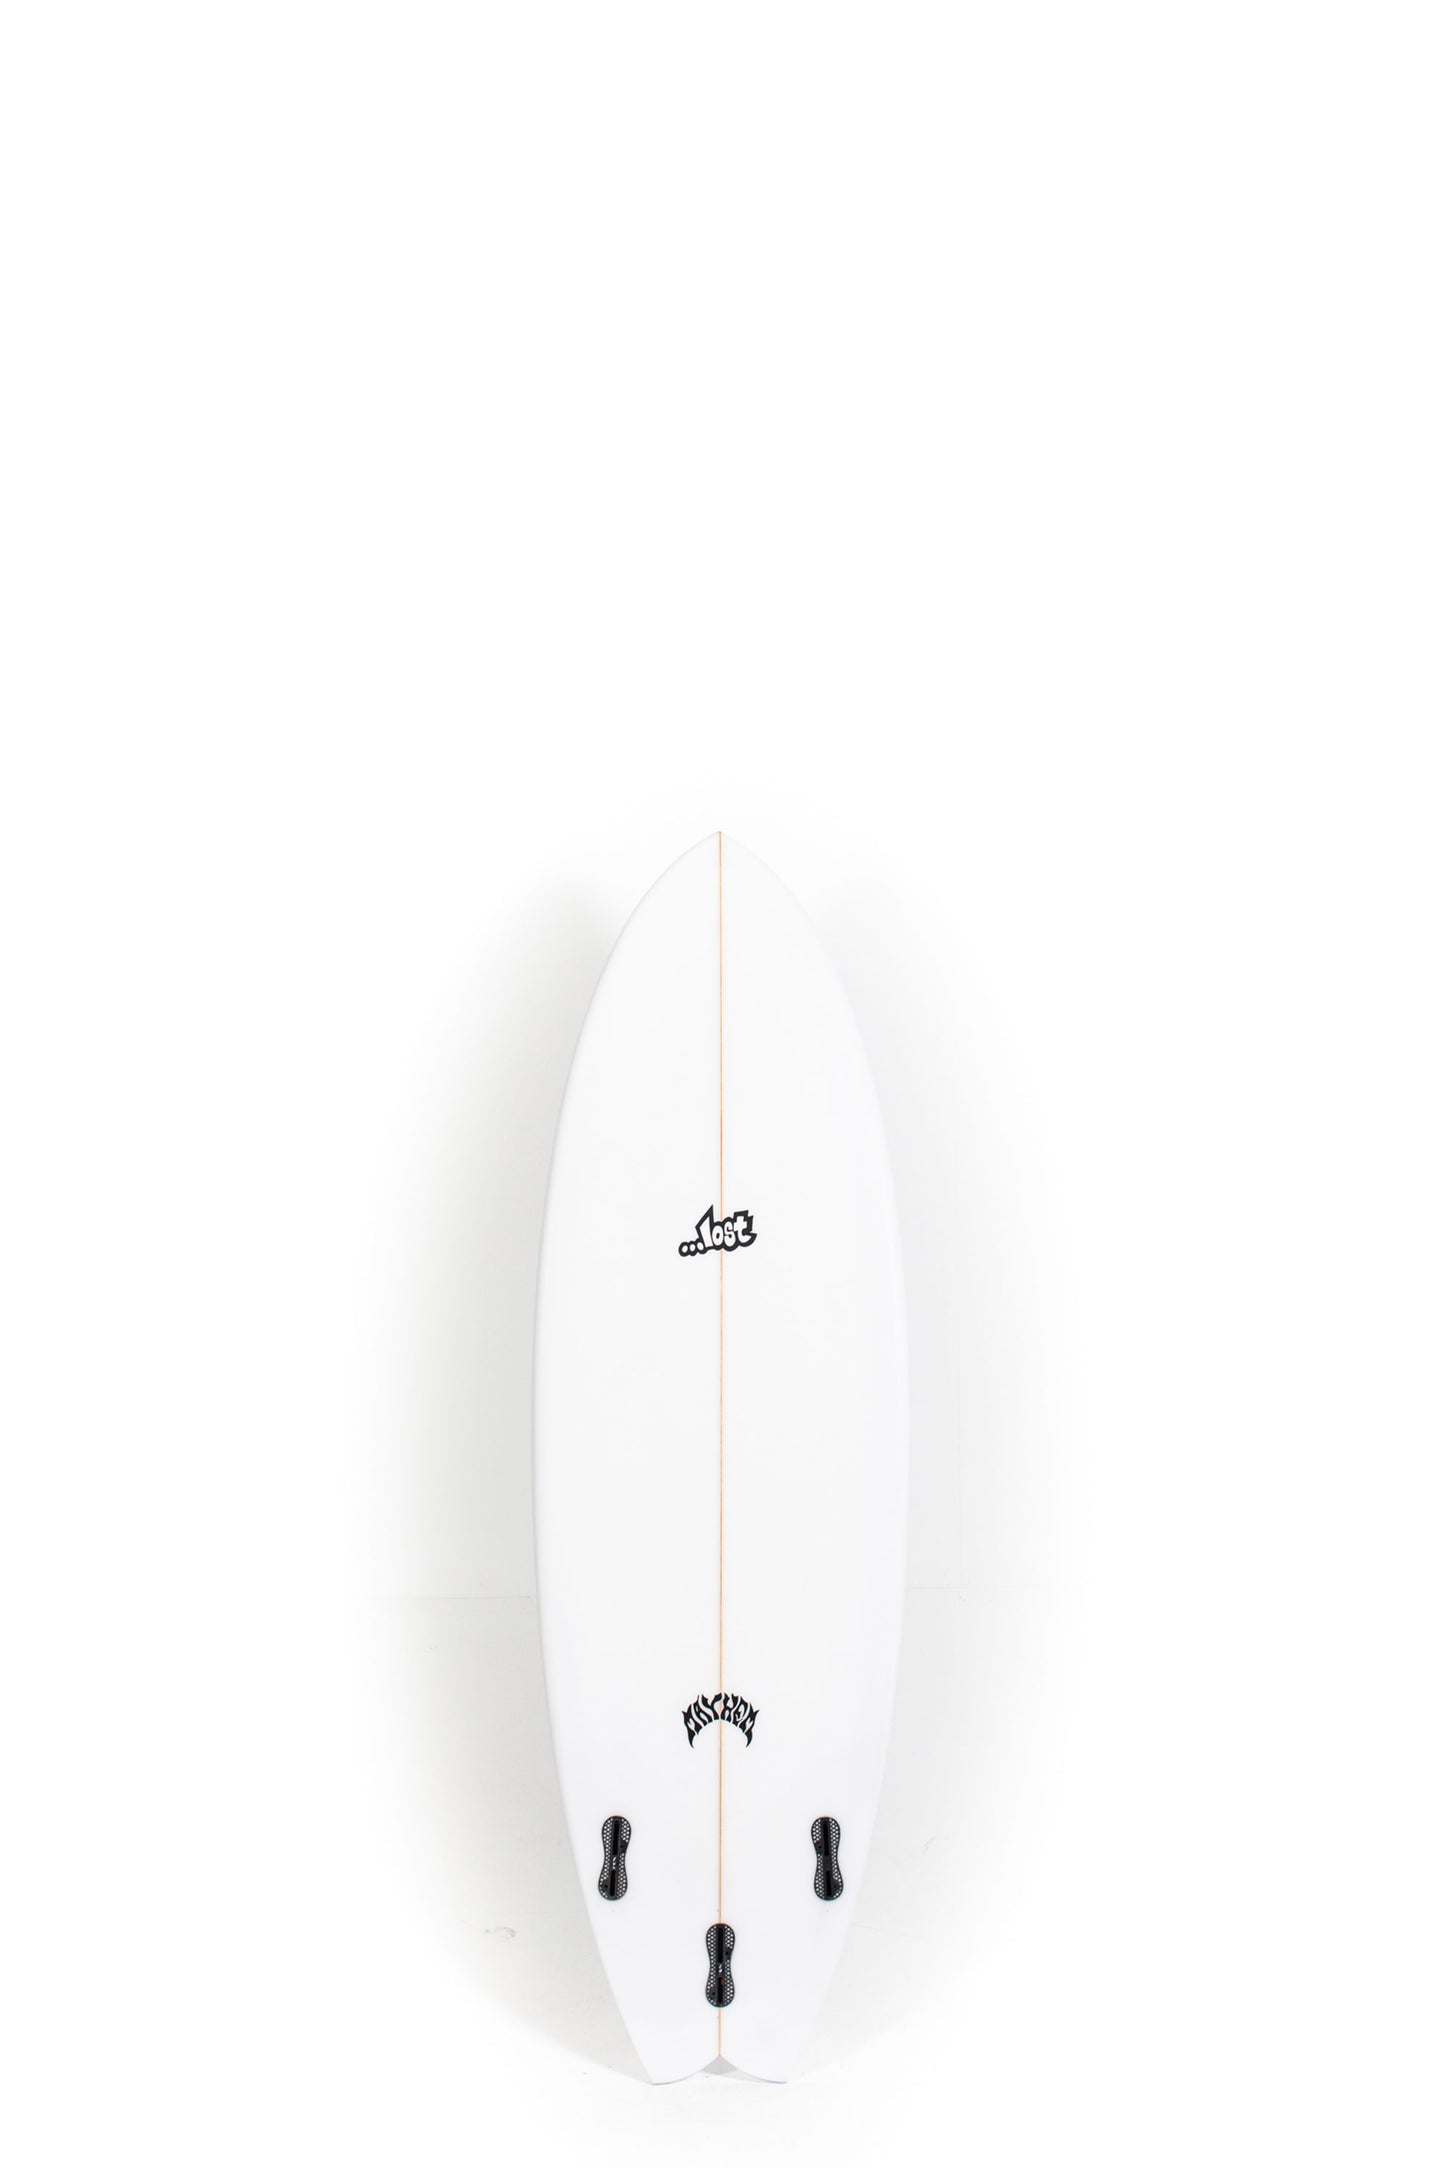 Pukas Surf Shop - Lost Surfboard - RNF '96 by Matt Biolos - 5'5"x 19.5" x 2.37 x 28,5L - MH18067